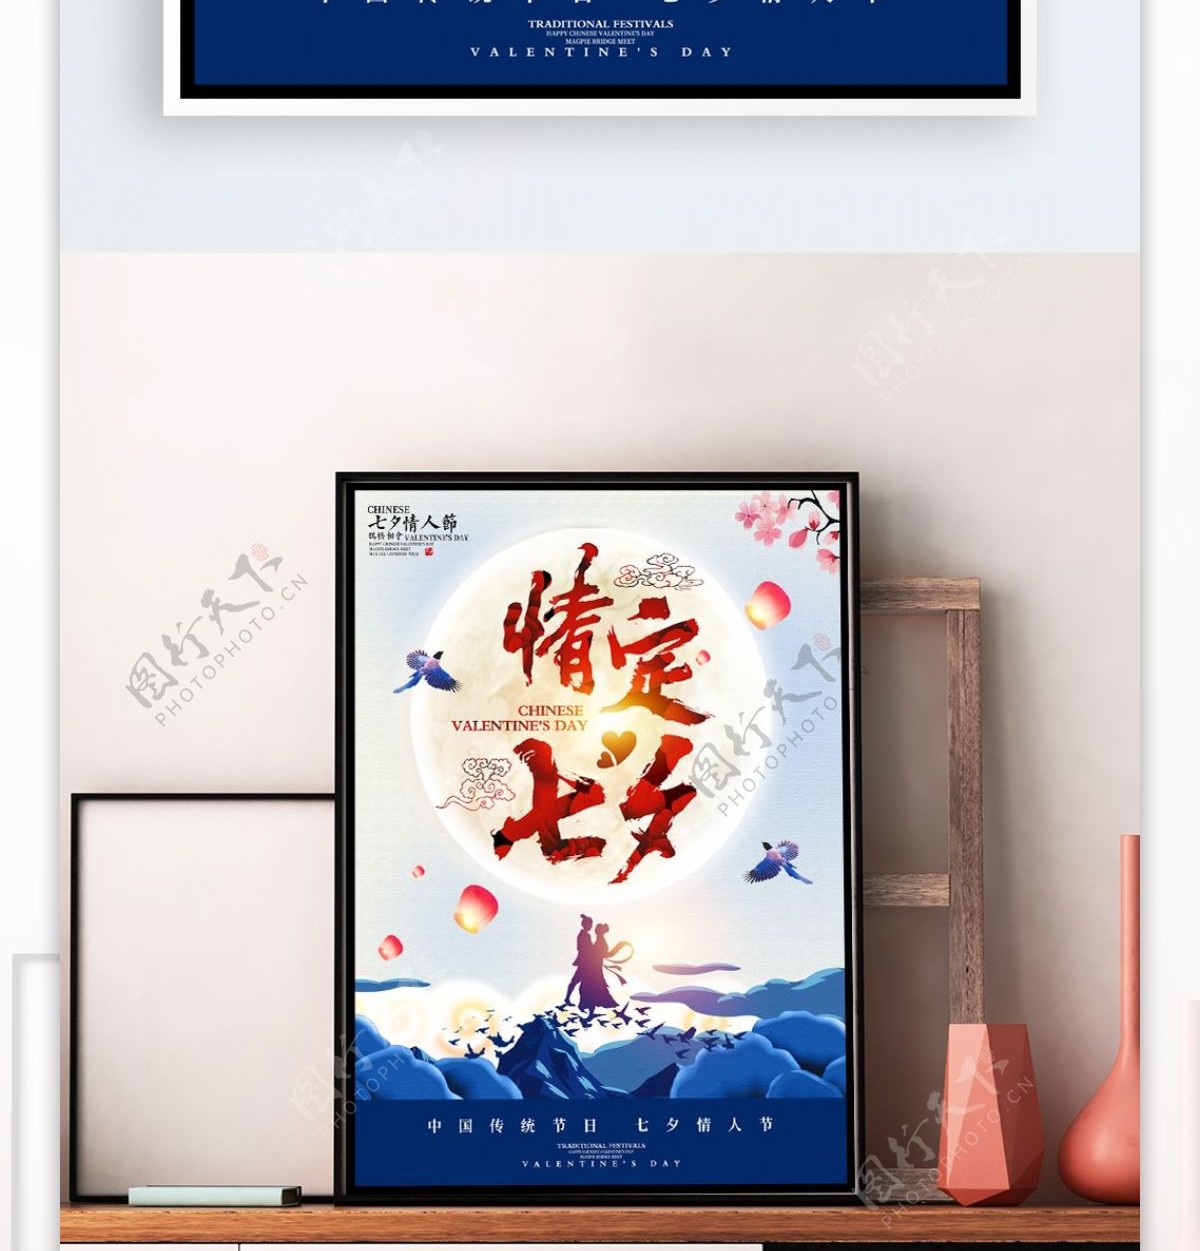 七夕节促销海报设计